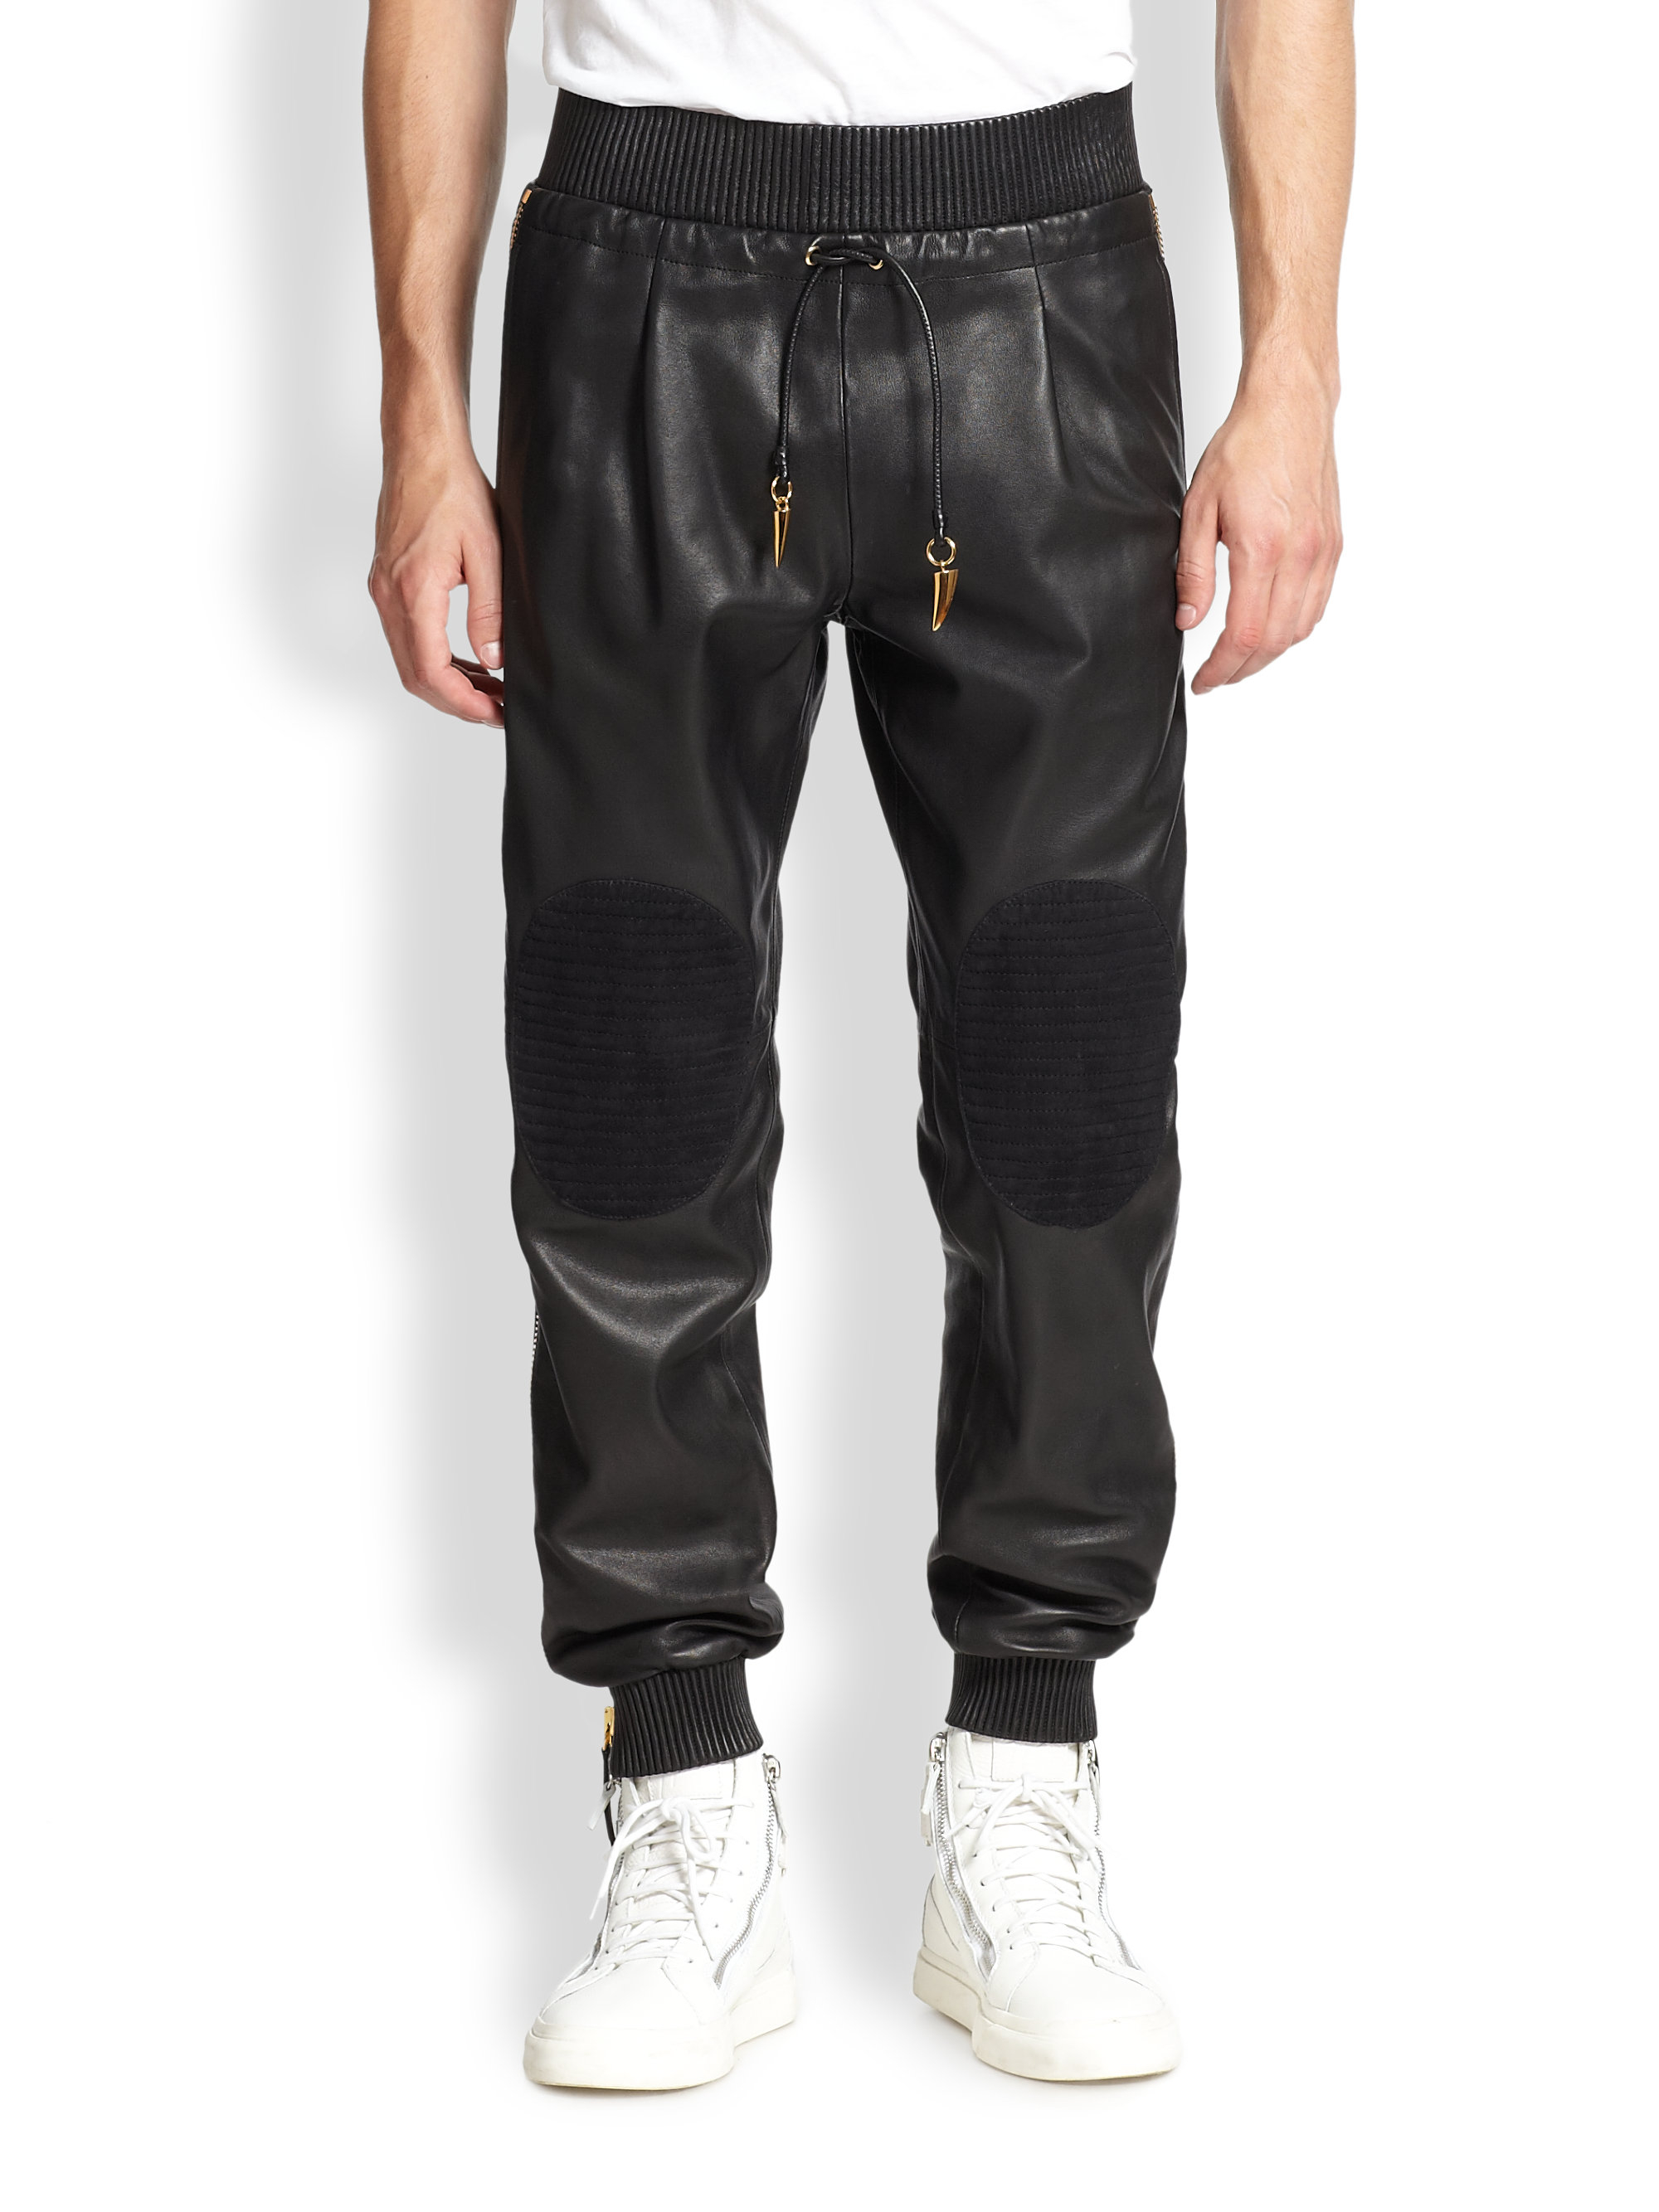 Giuseppe zanotti Leather Pants in Black for Men | Lyst